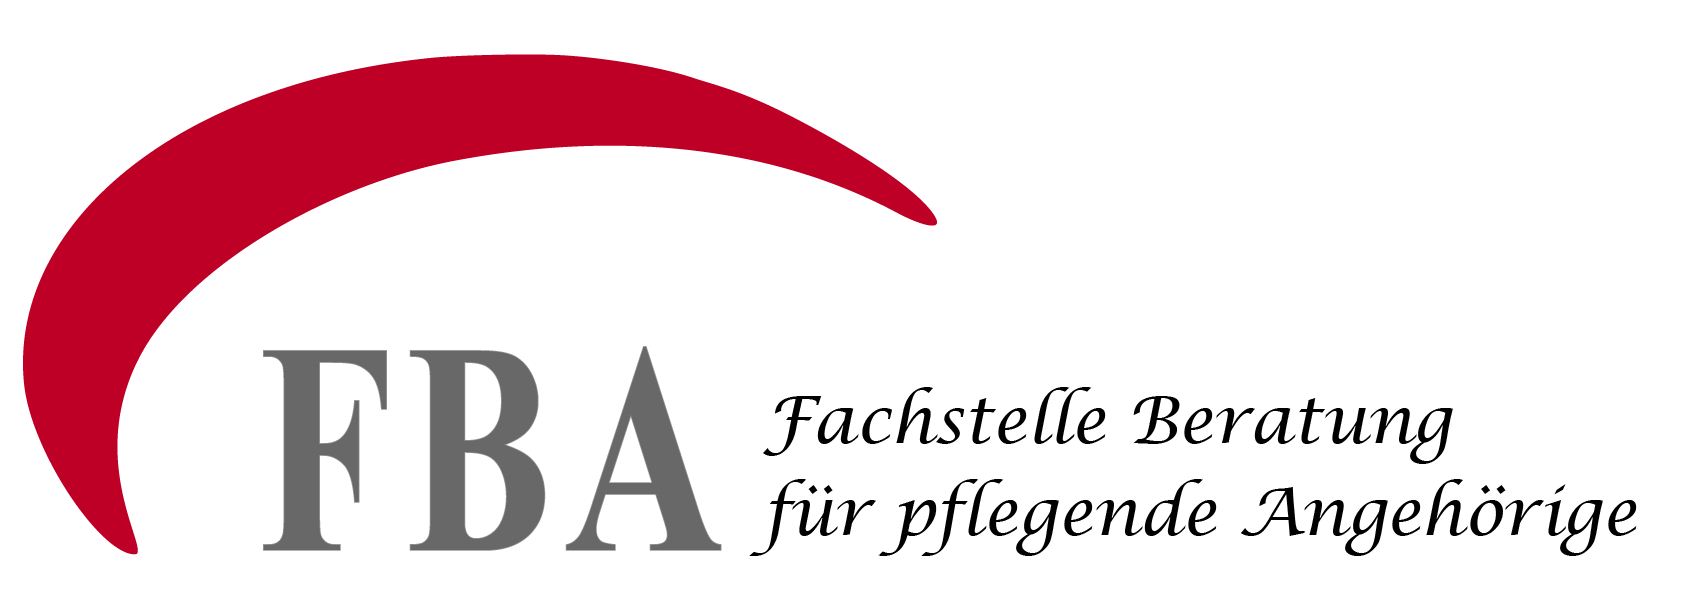 Fachstelle Beratung für pflegende Angehörige / Hasta ve yaşlı bakımı ile görevli aile mensublarına profesyonel bilgi ve destek